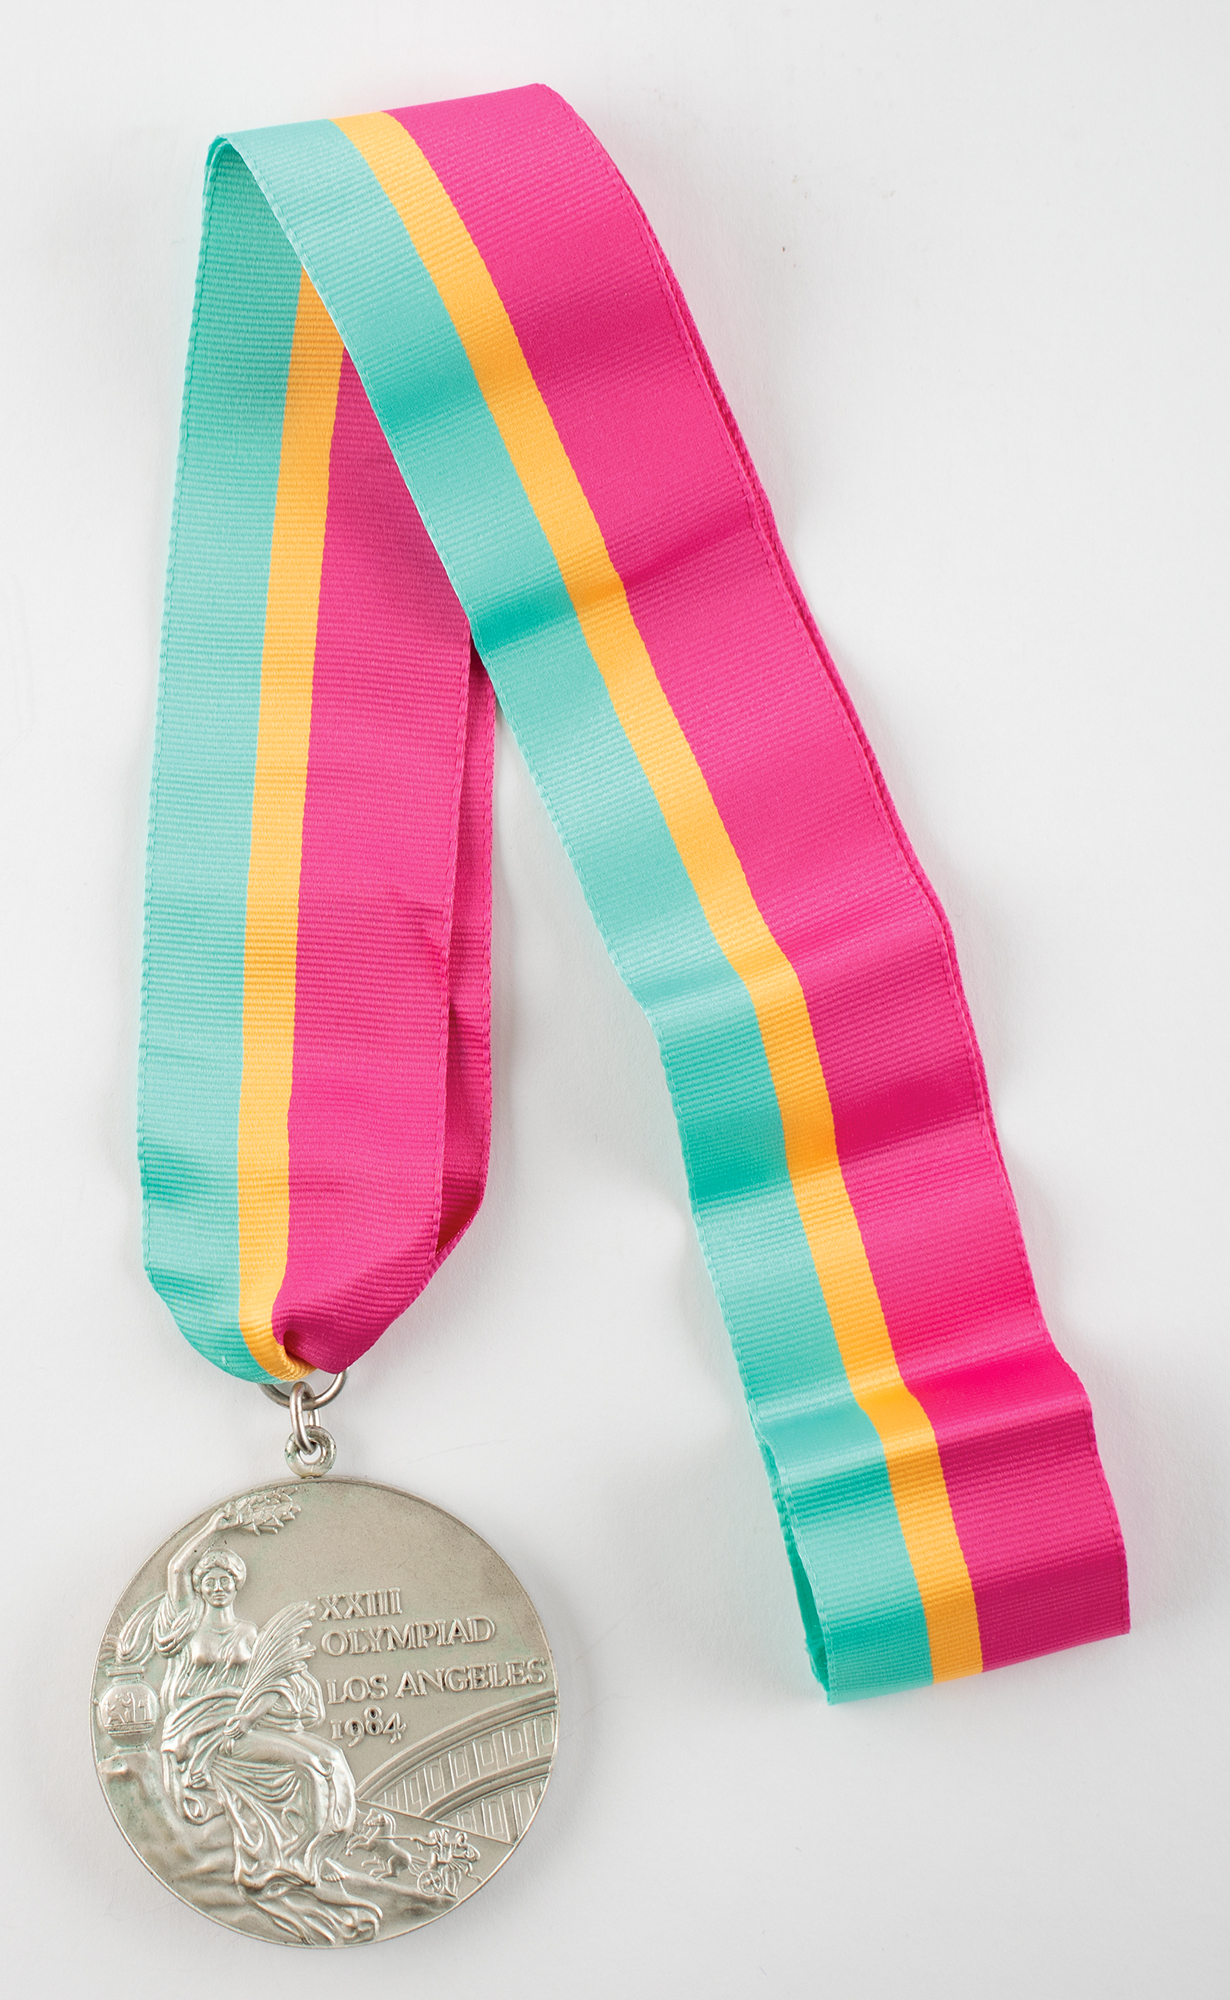 Lot #6124 Los Angeles 1984 Summer Olympics Silver Winner's Medal